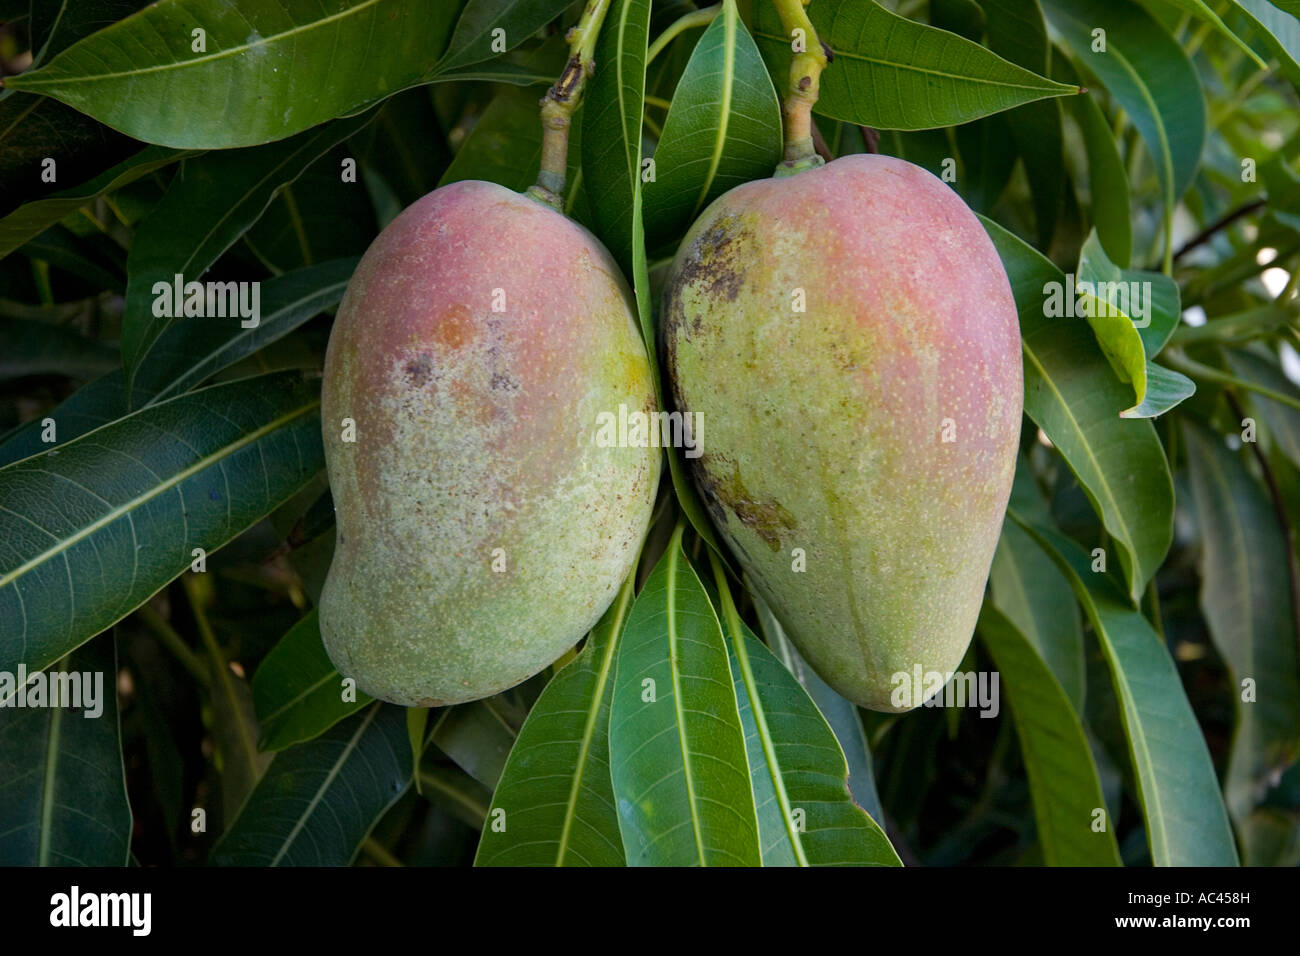 Dans un manguier (Mangifera indica) fructification. Le Mexique. Fruits en manguier (Mangifera indica). Mexique. Banque D'Images